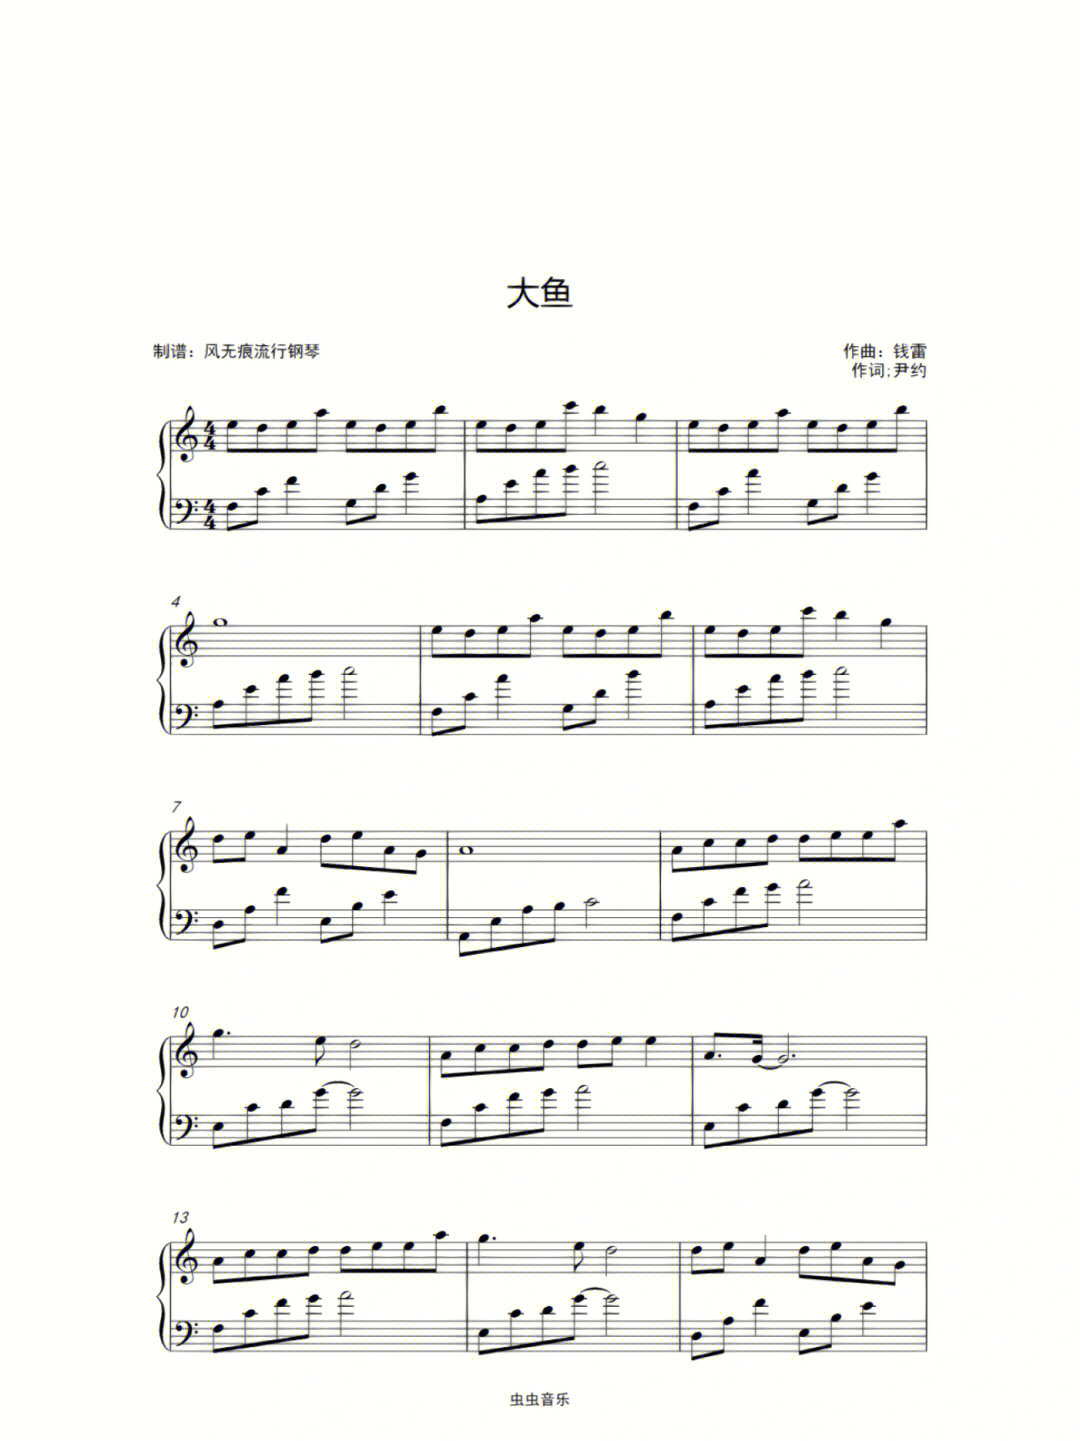 大鱼海棠演奏版钢琴谱图片